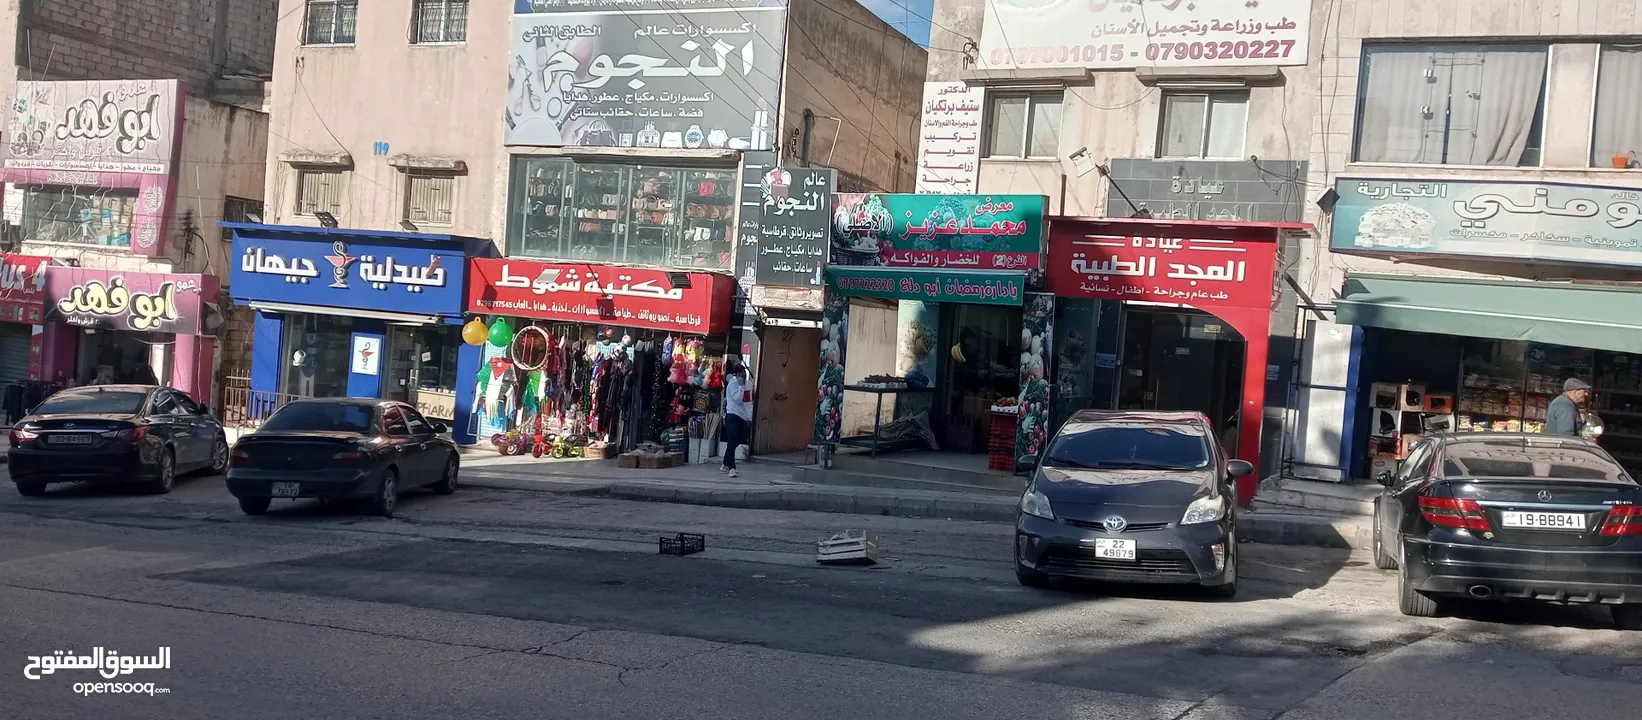 عماره في منطقه المناره قرب صيدليه المشرق